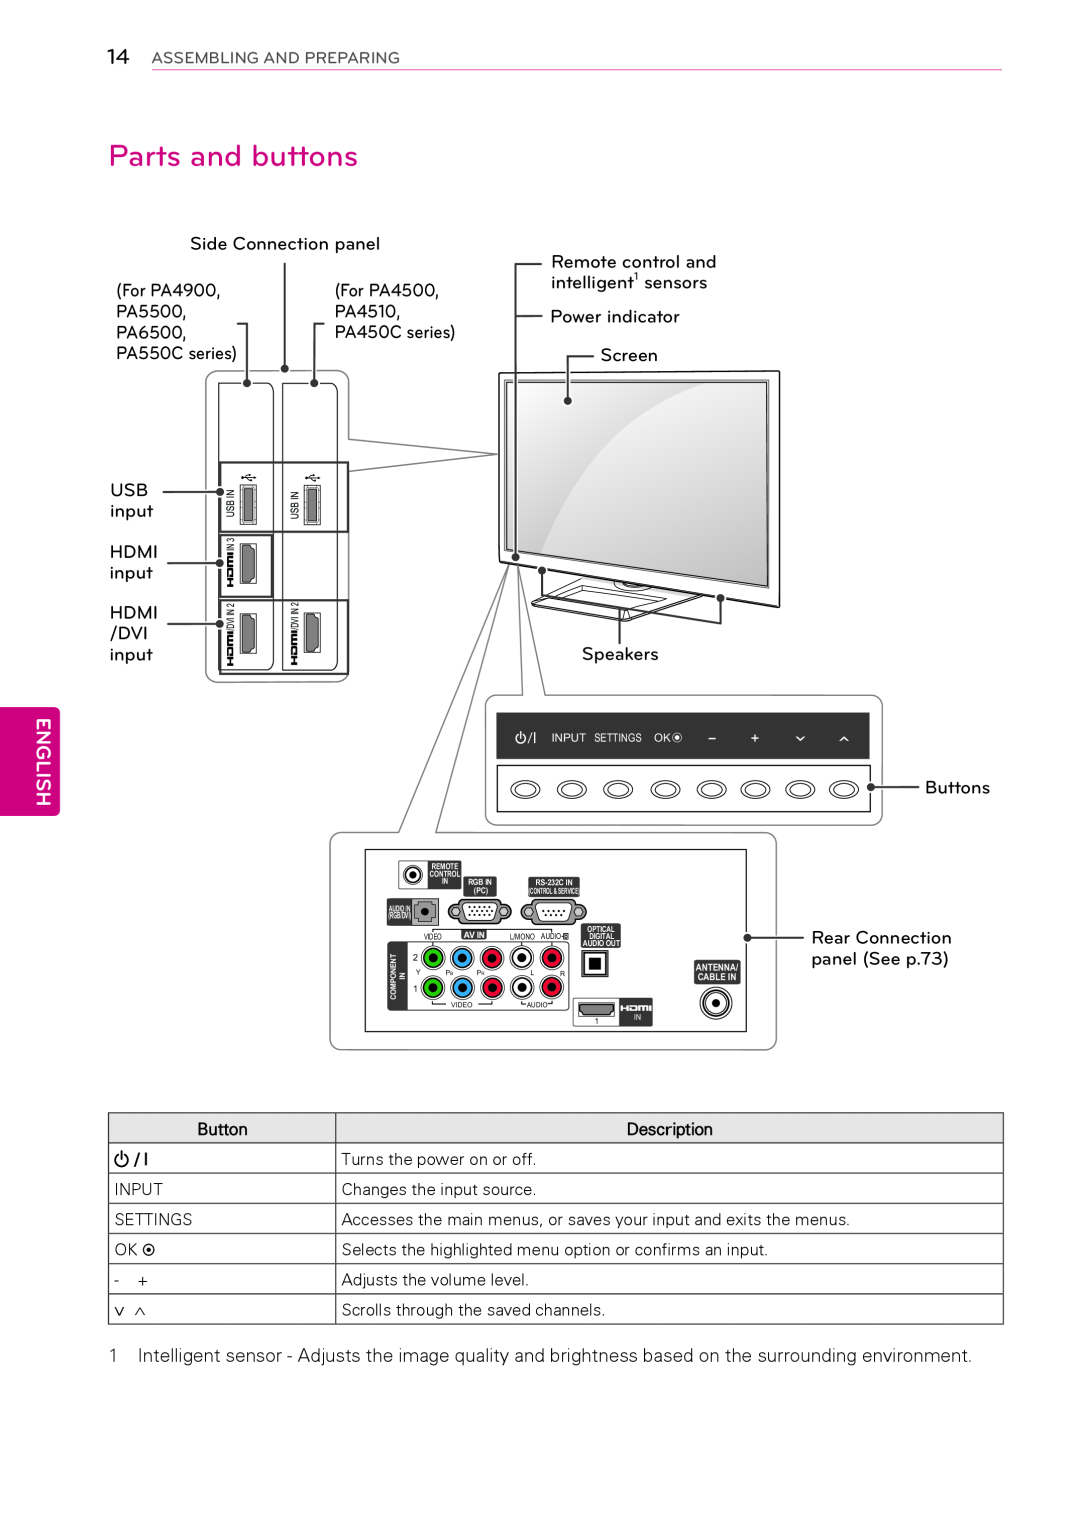 LG Electronics 50PA450C, 60PA6500, 60PA5500, 60PA550C, 42PA450C, 42PA4900 Parts and buttons, English, Button, Description 